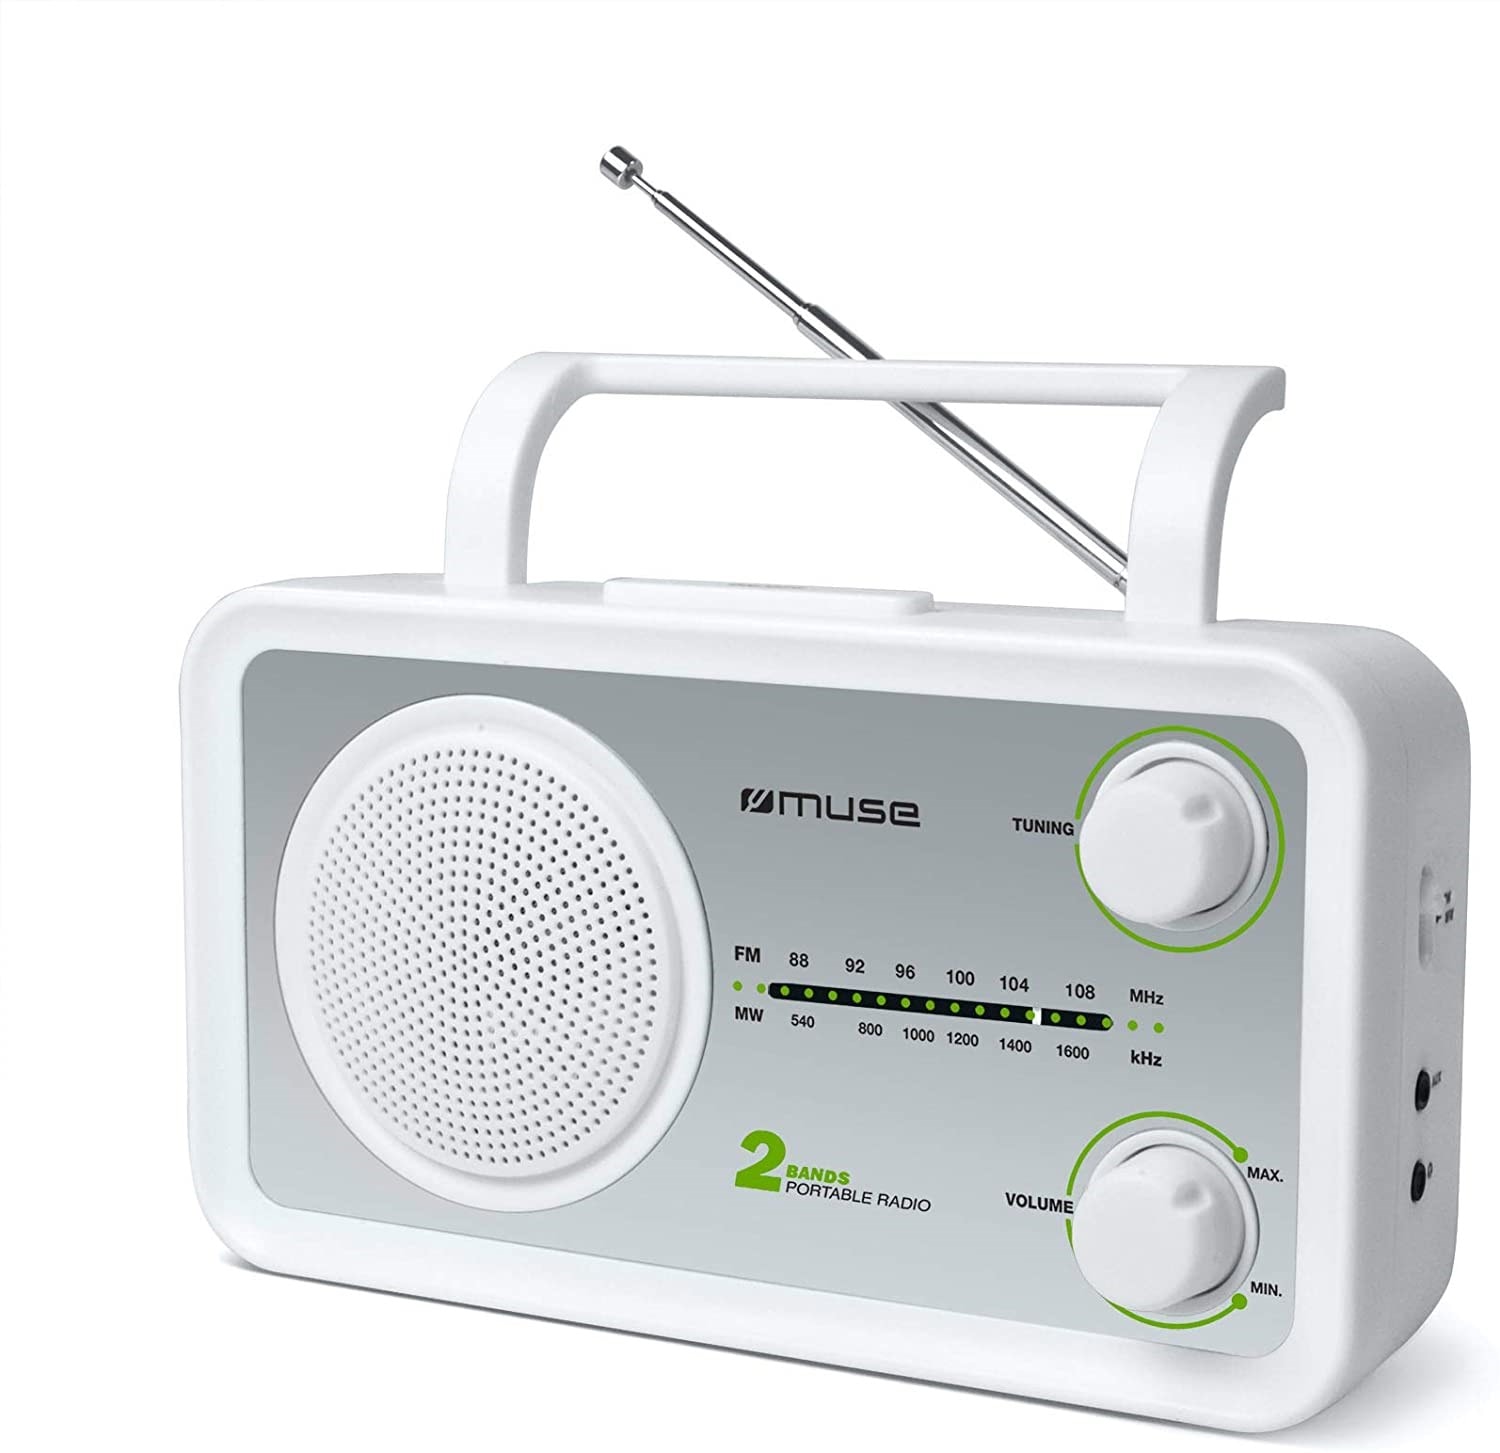 Muse m-06 ds radio de cuisine (fm, ondes moyennes mw) fonctionne